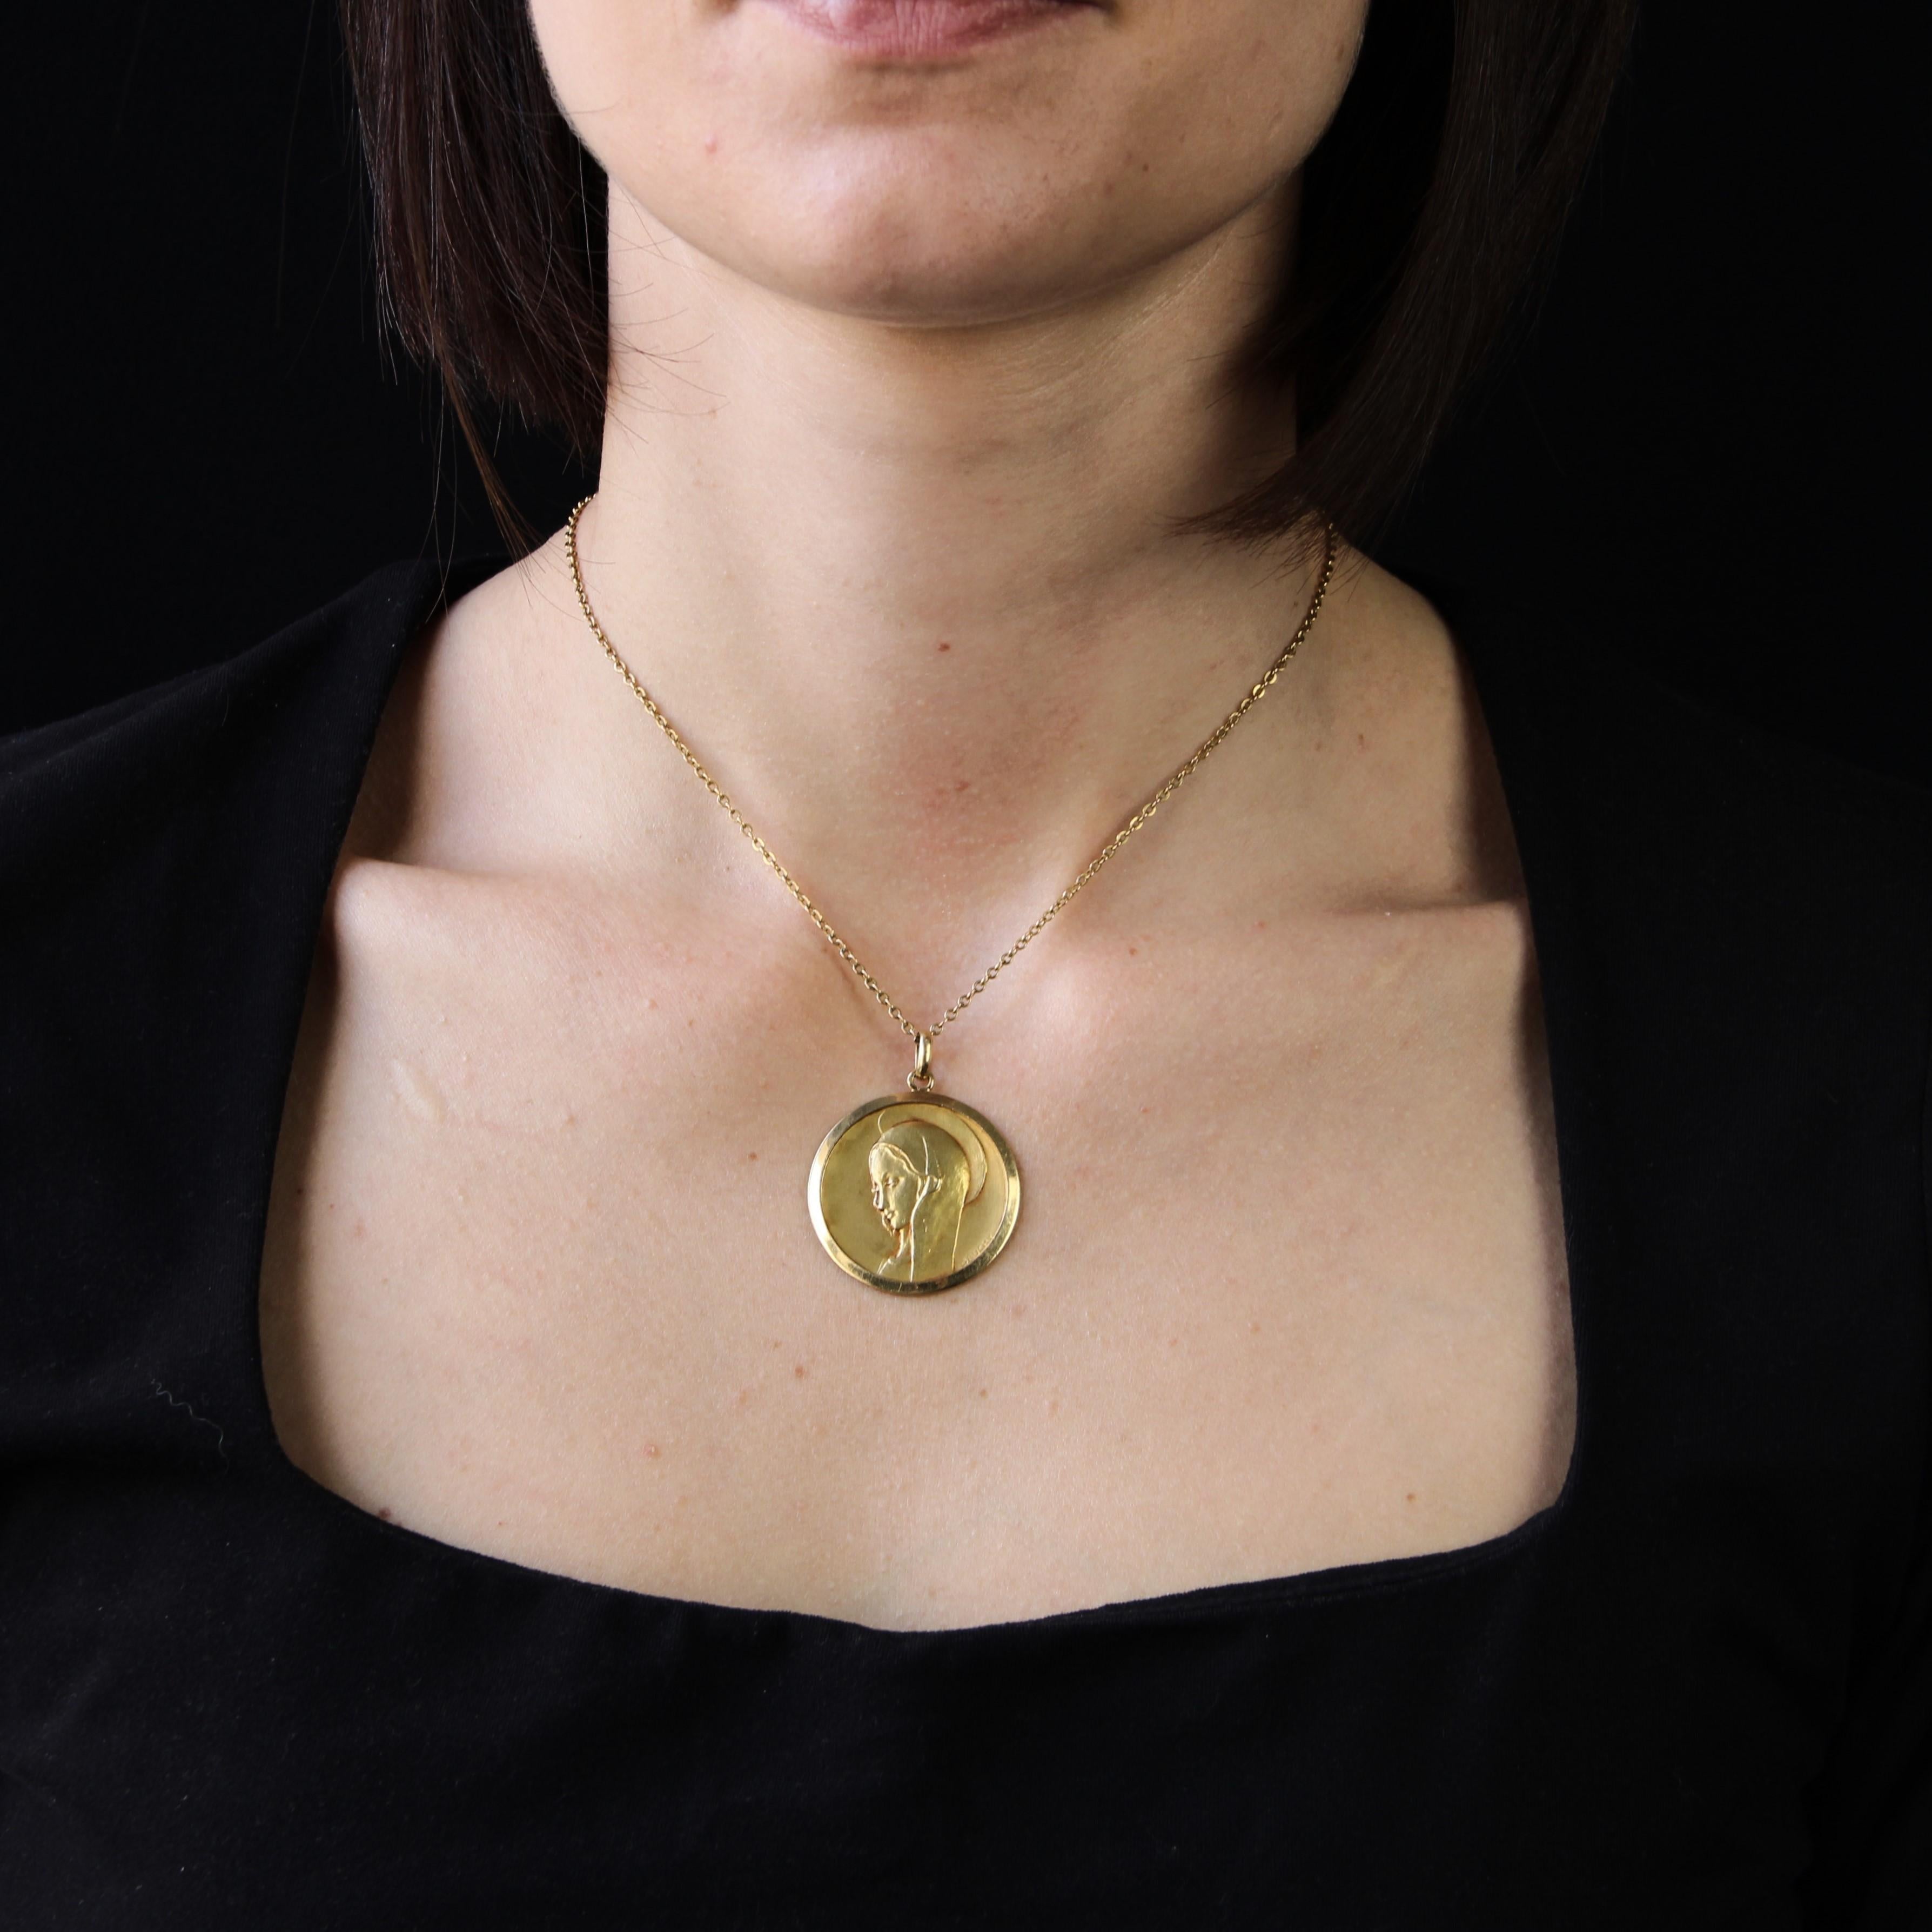 Medaille aus 18 Karat Gelbgold, Adlerkopfpunze.
Eine bedeutende antike Medaille, die das Profil der mit einem Heiligenschein versehenen Jungfrau Maria zeigt. Die Rückseite ist mit verschlungenen Initialen graviert.
Unterschrieben Bauchy.
Der